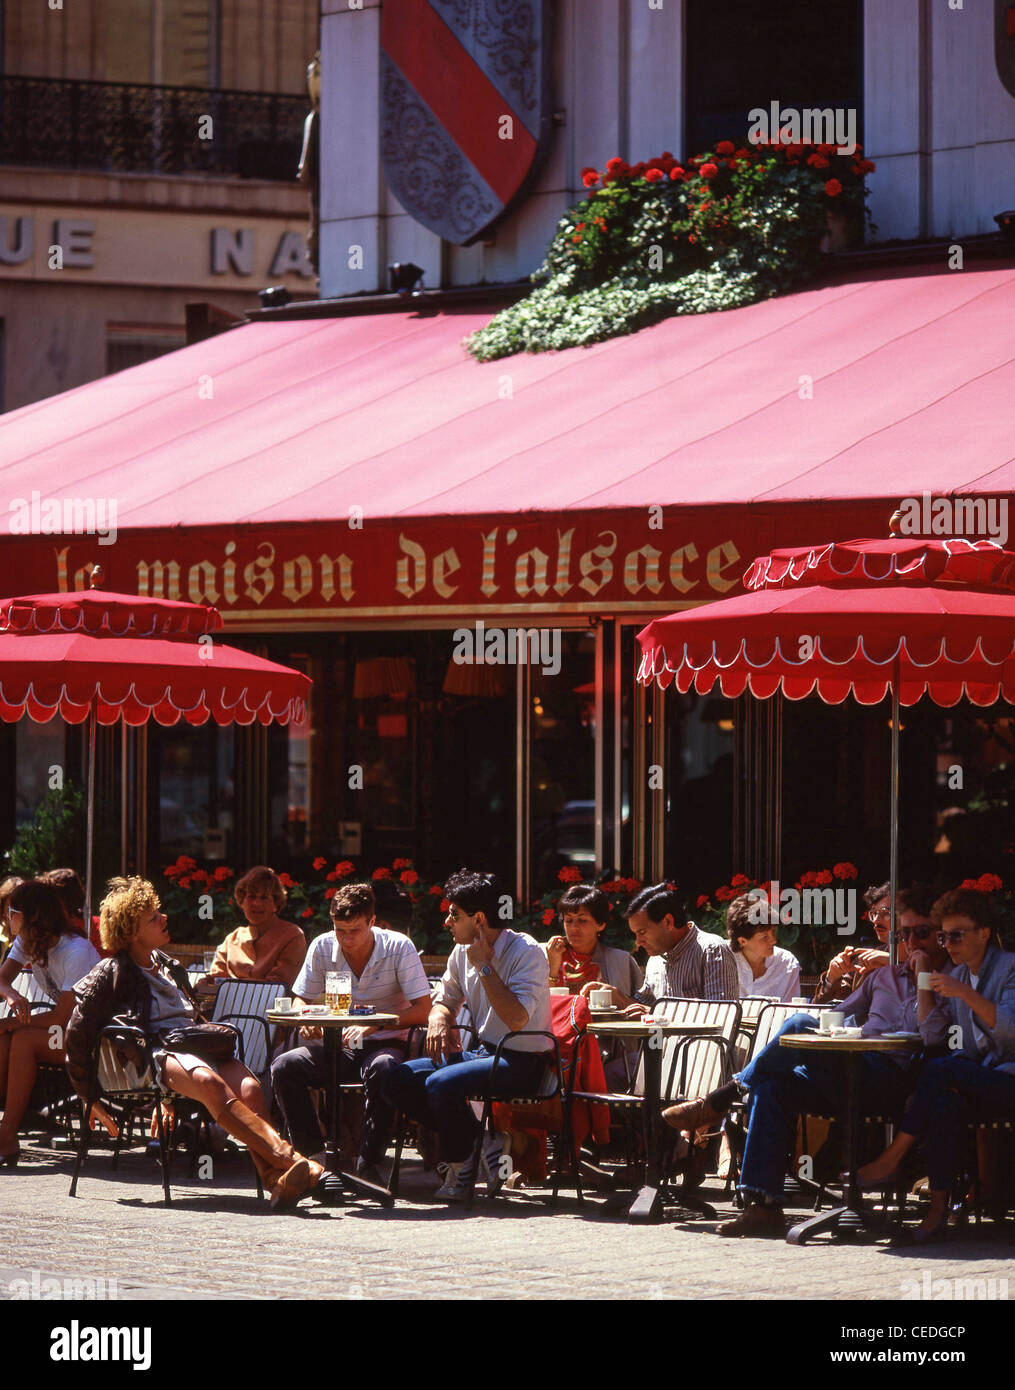 La Maison de l'Alsazia ristorante, Avenue des Champs-Élysées, Parigi, Île-de-France, Francia Foto Stock